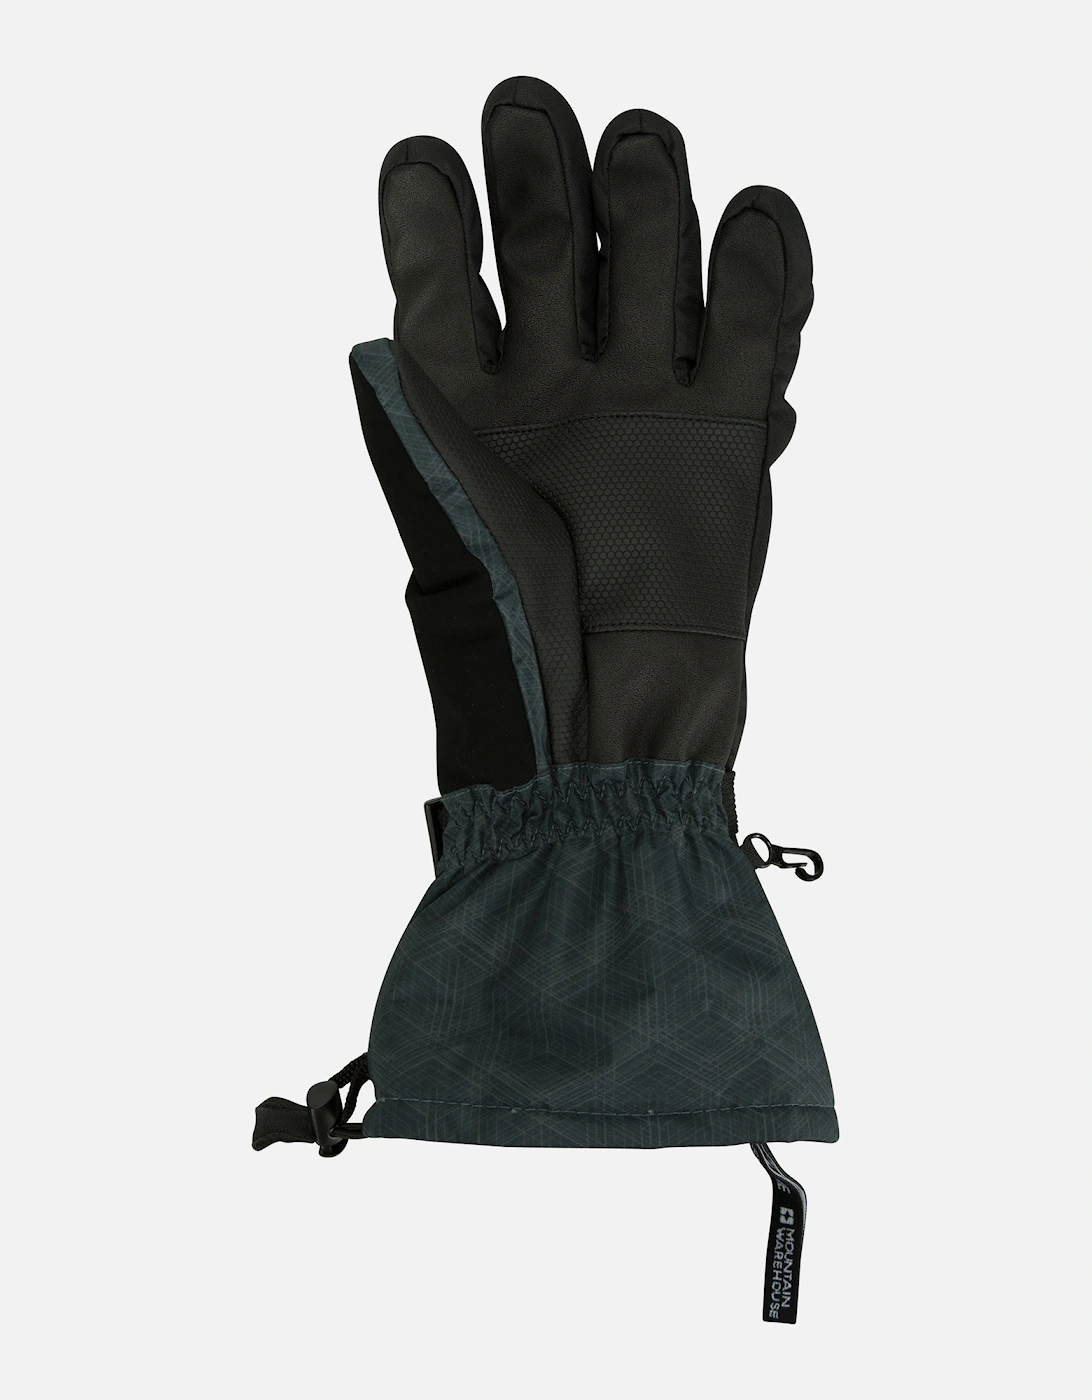 Mens Mountain Ski Gloves